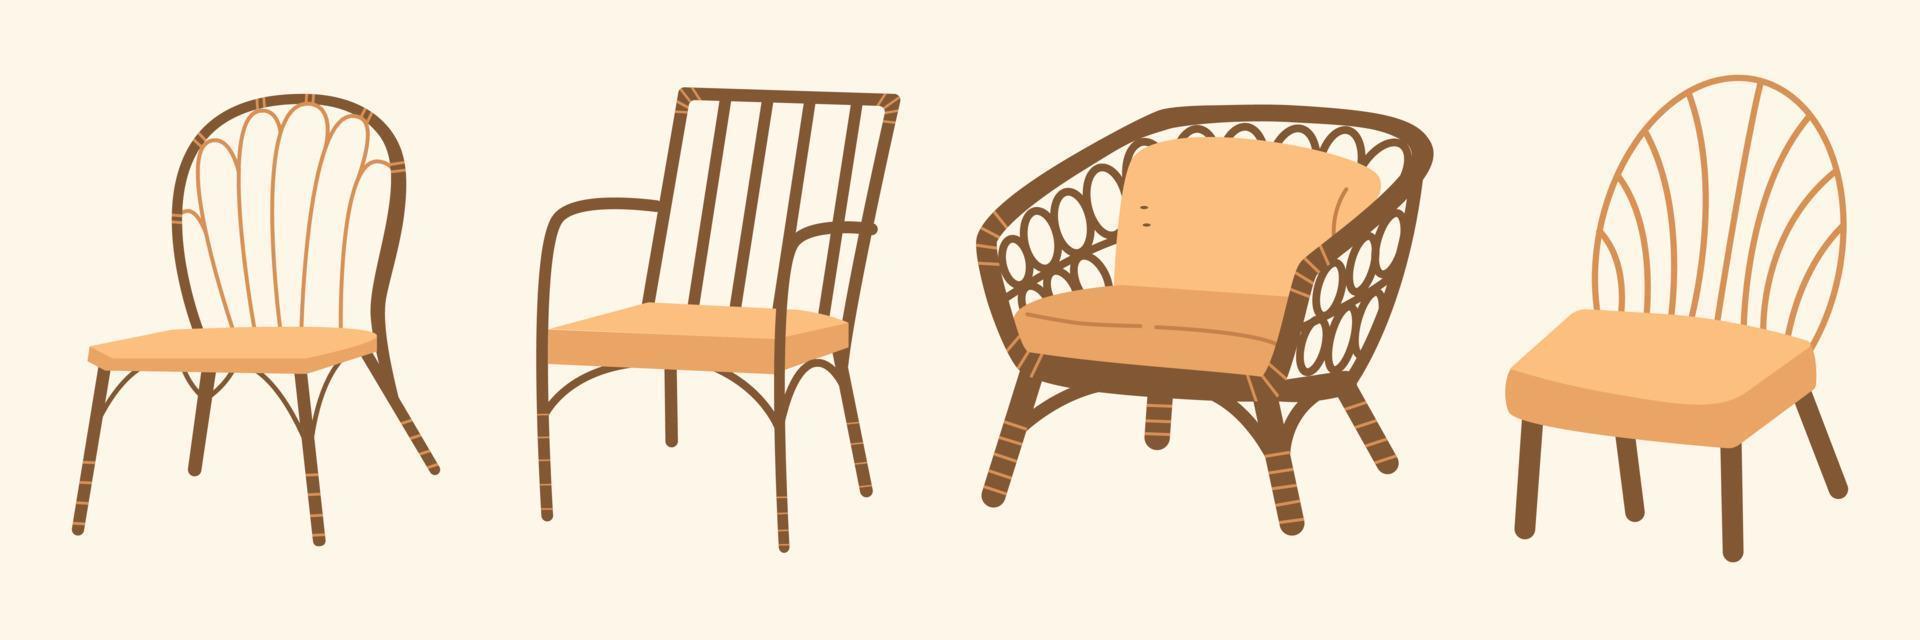 muebles vintage en estilo boho design. ilustración bohemia para elementos de diseño. sillas antiguas estilo clasico vector